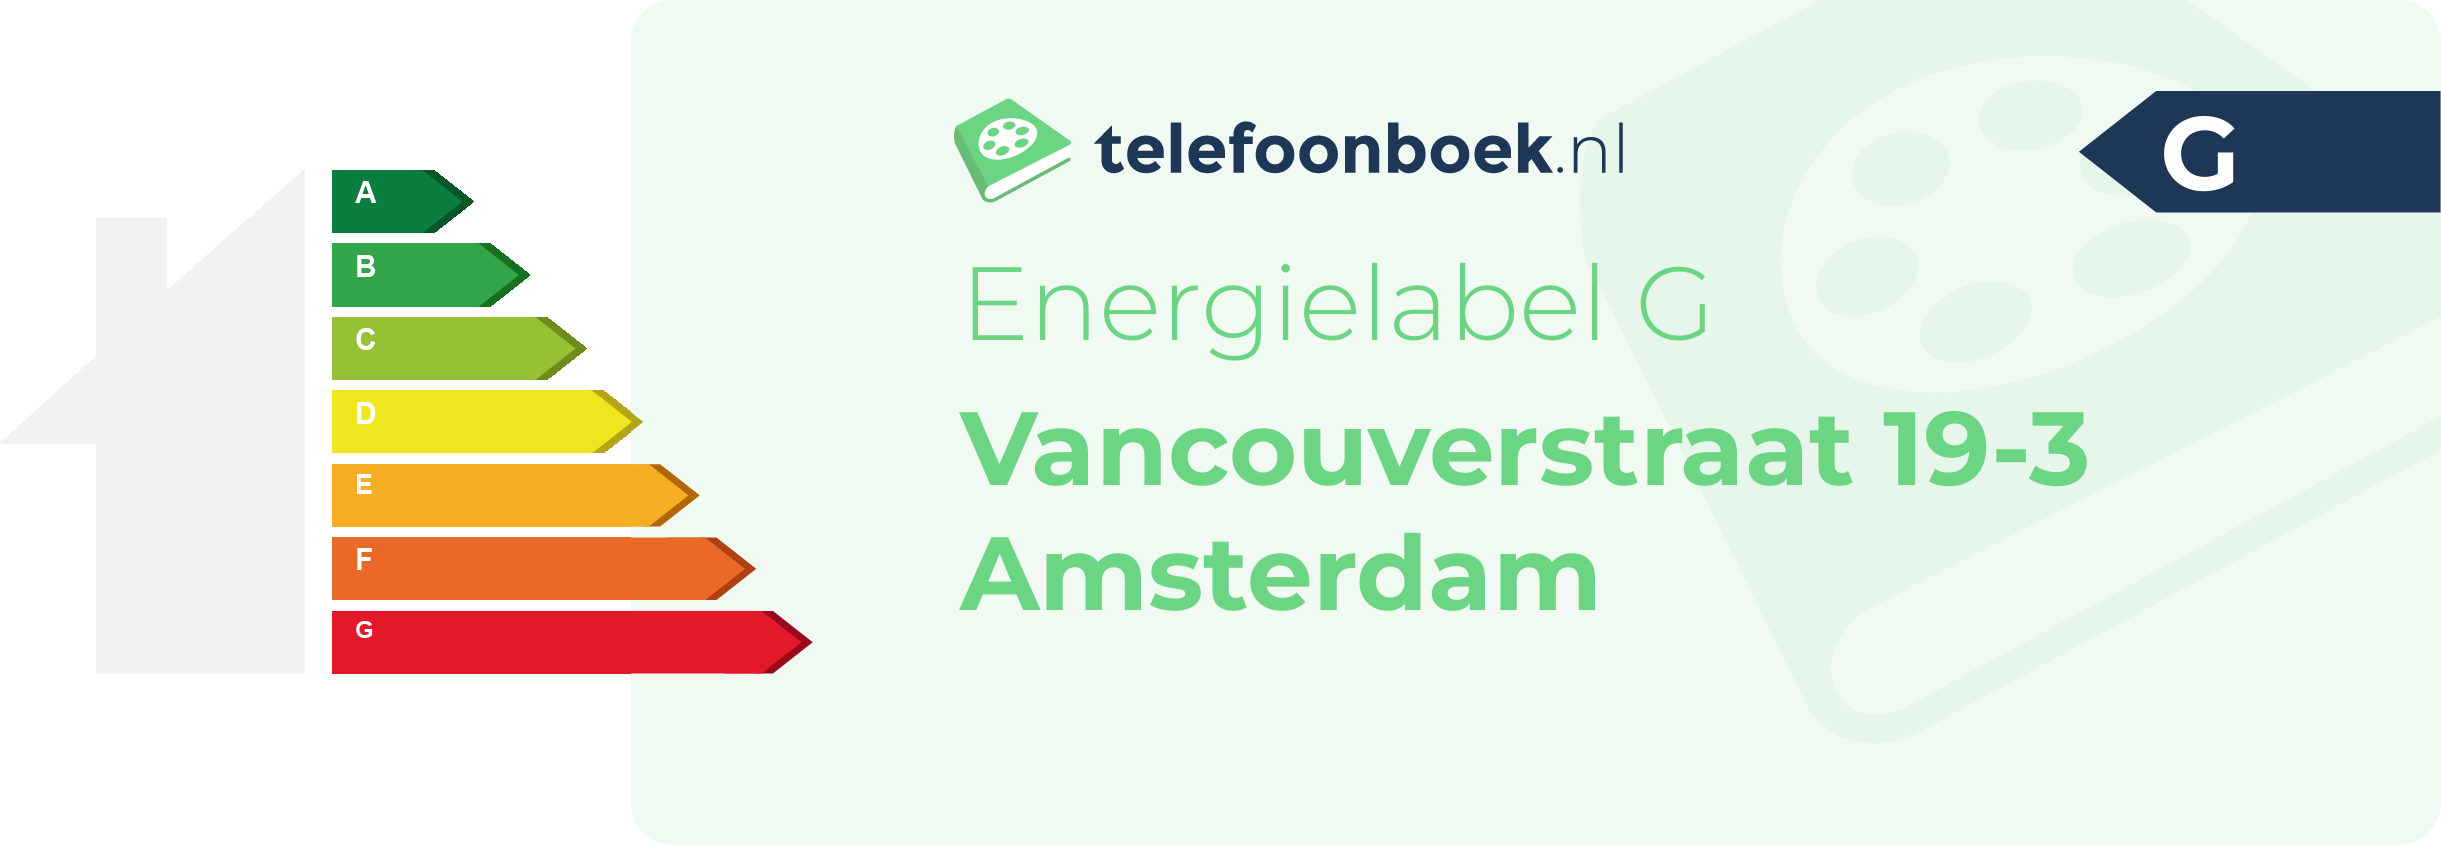 Energielabel Vancouverstraat 19-3 Amsterdam